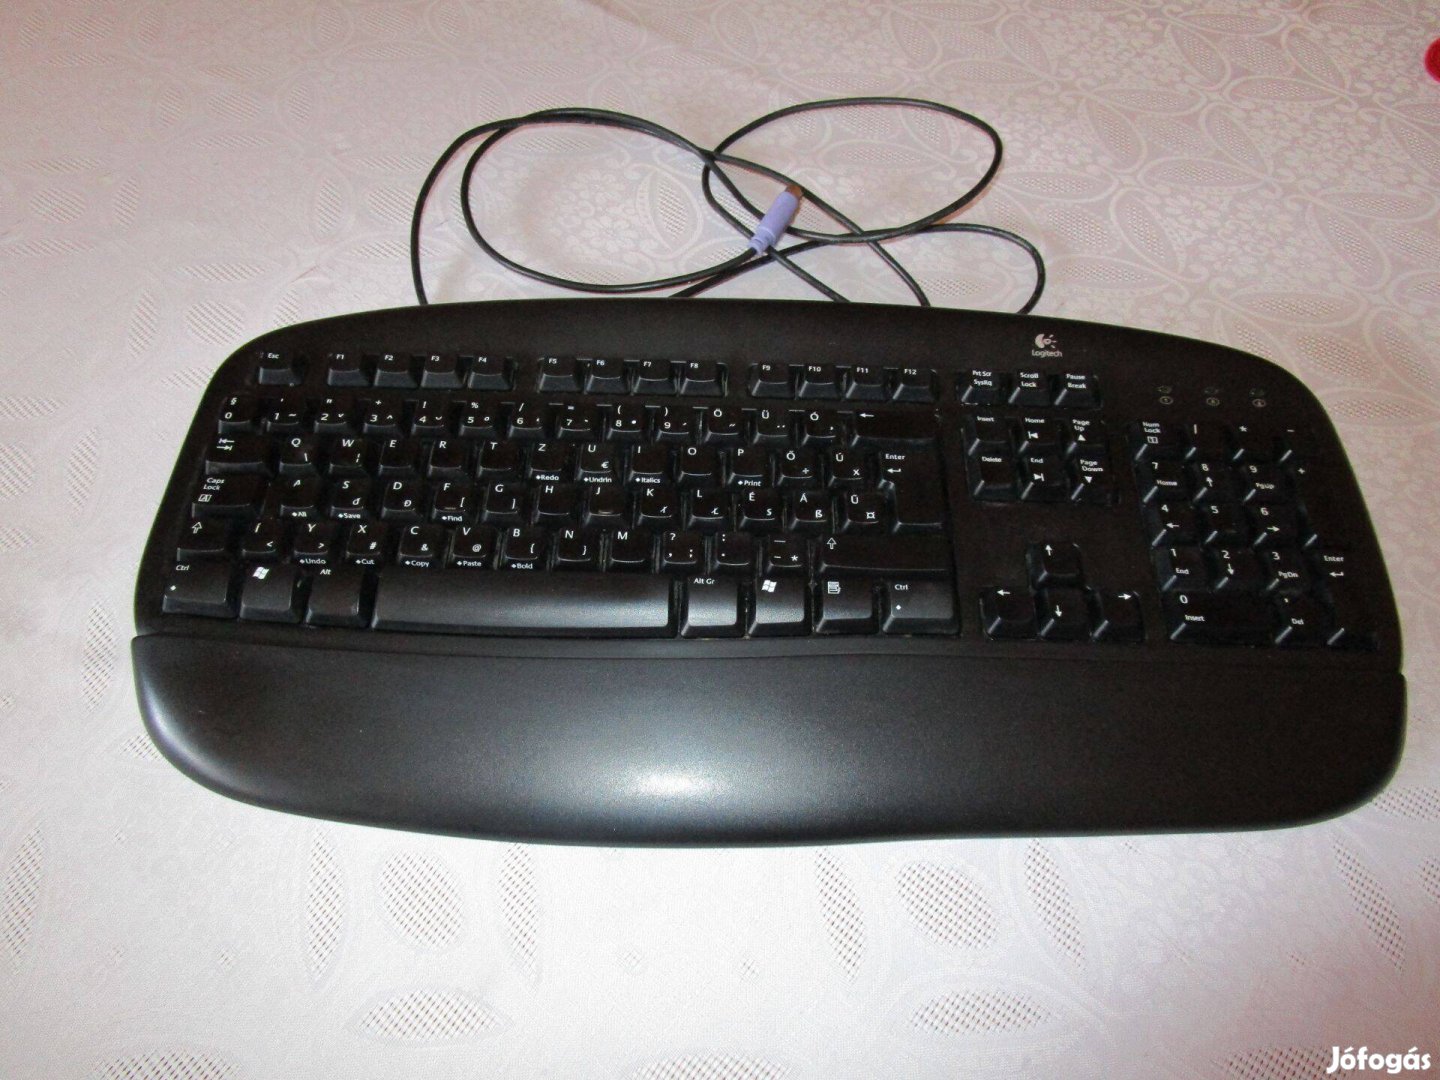 Logitech Deluxe Keyboard vezetékes számítógép billentyűzet eladó